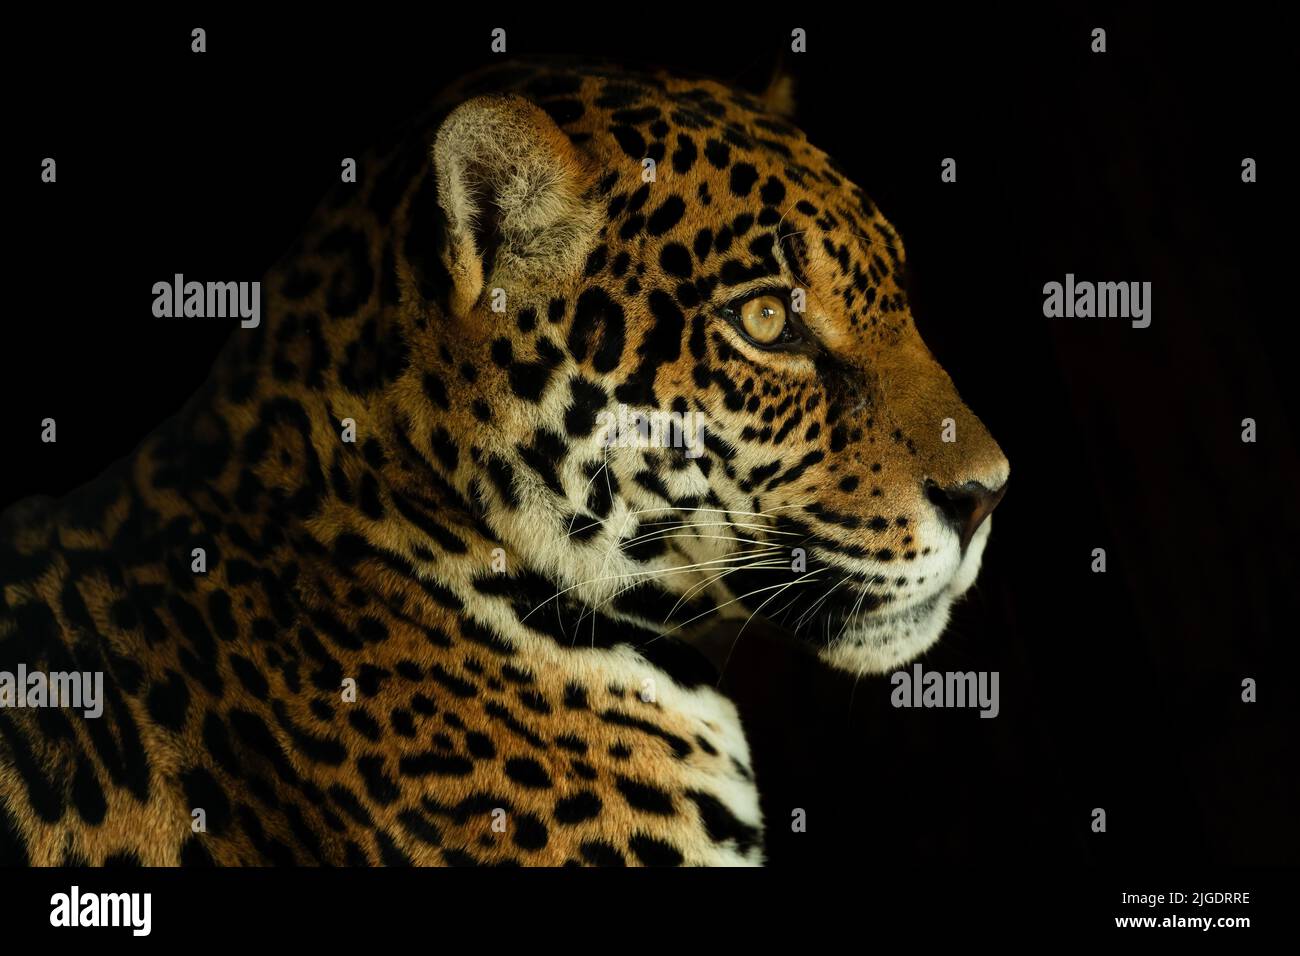 Jaguar - Panthera onca, retrato de un hermoso gato grande de bosques sudamericanos, cuenca amazónica, Brasil. Foto de stock